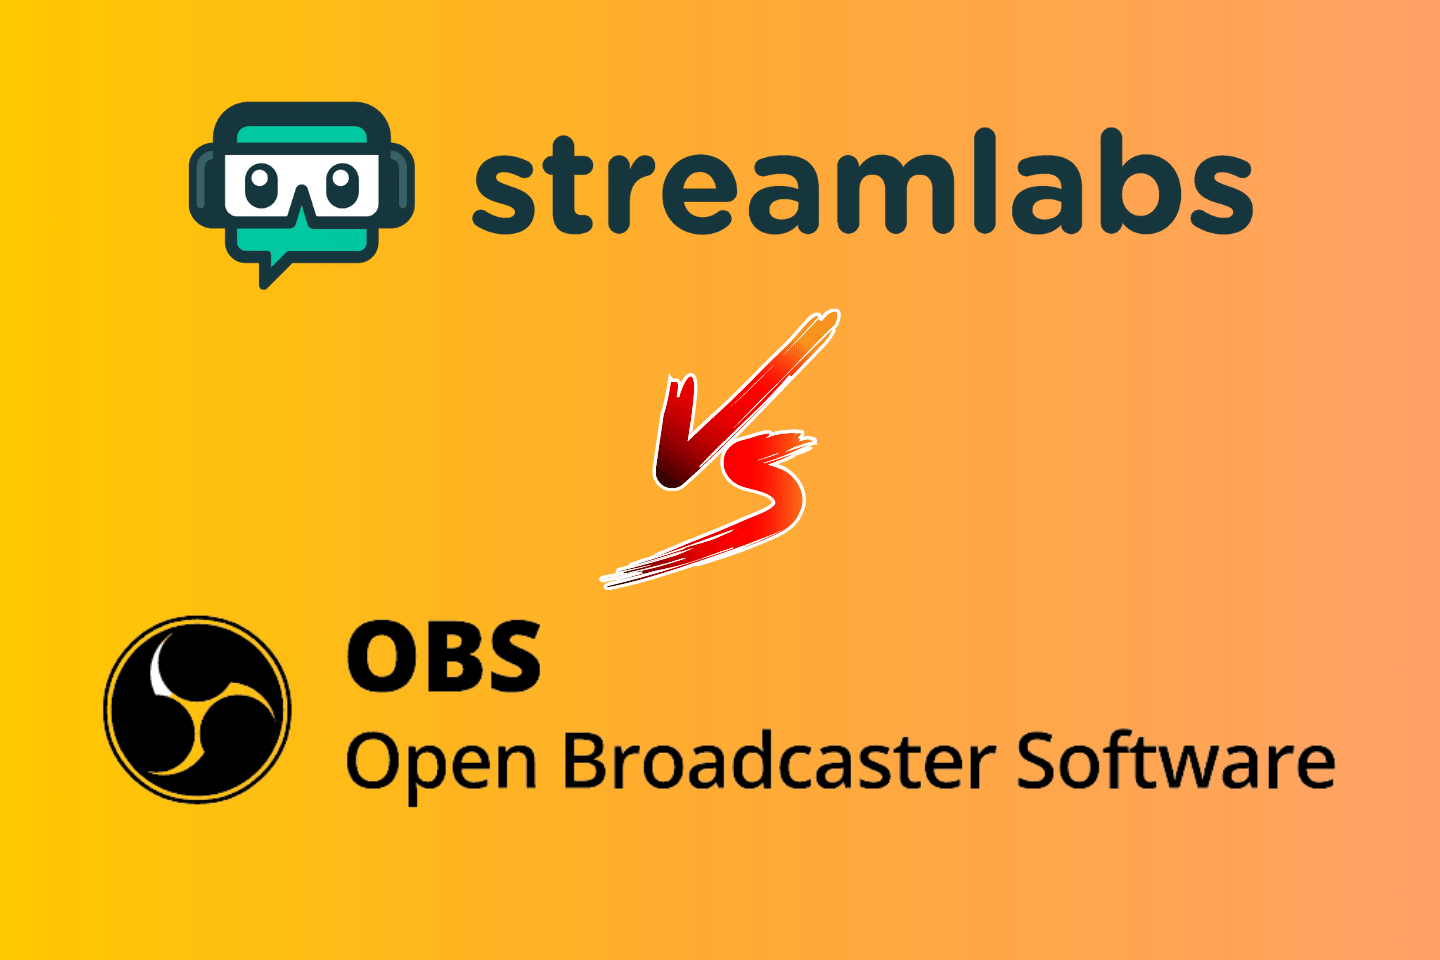 obs vs streamlabs